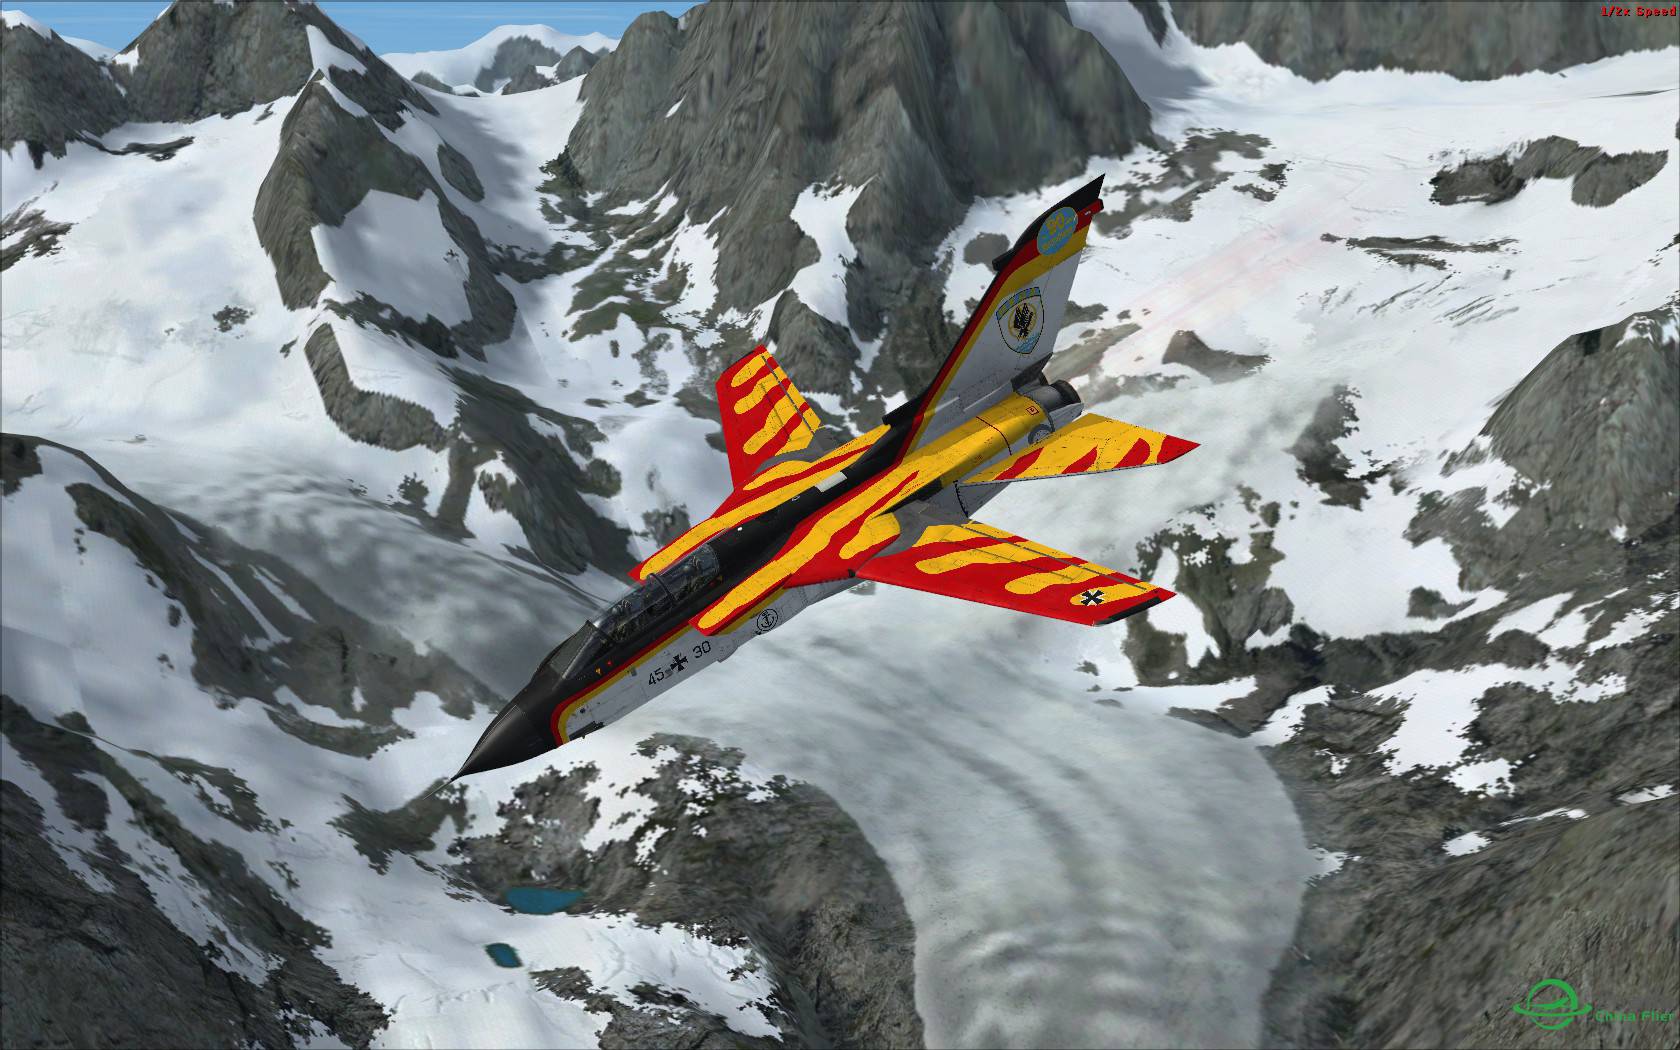 冰与火之歌:最新Just Flight狂风战机火红涂装与蓝色北美冰...-563 